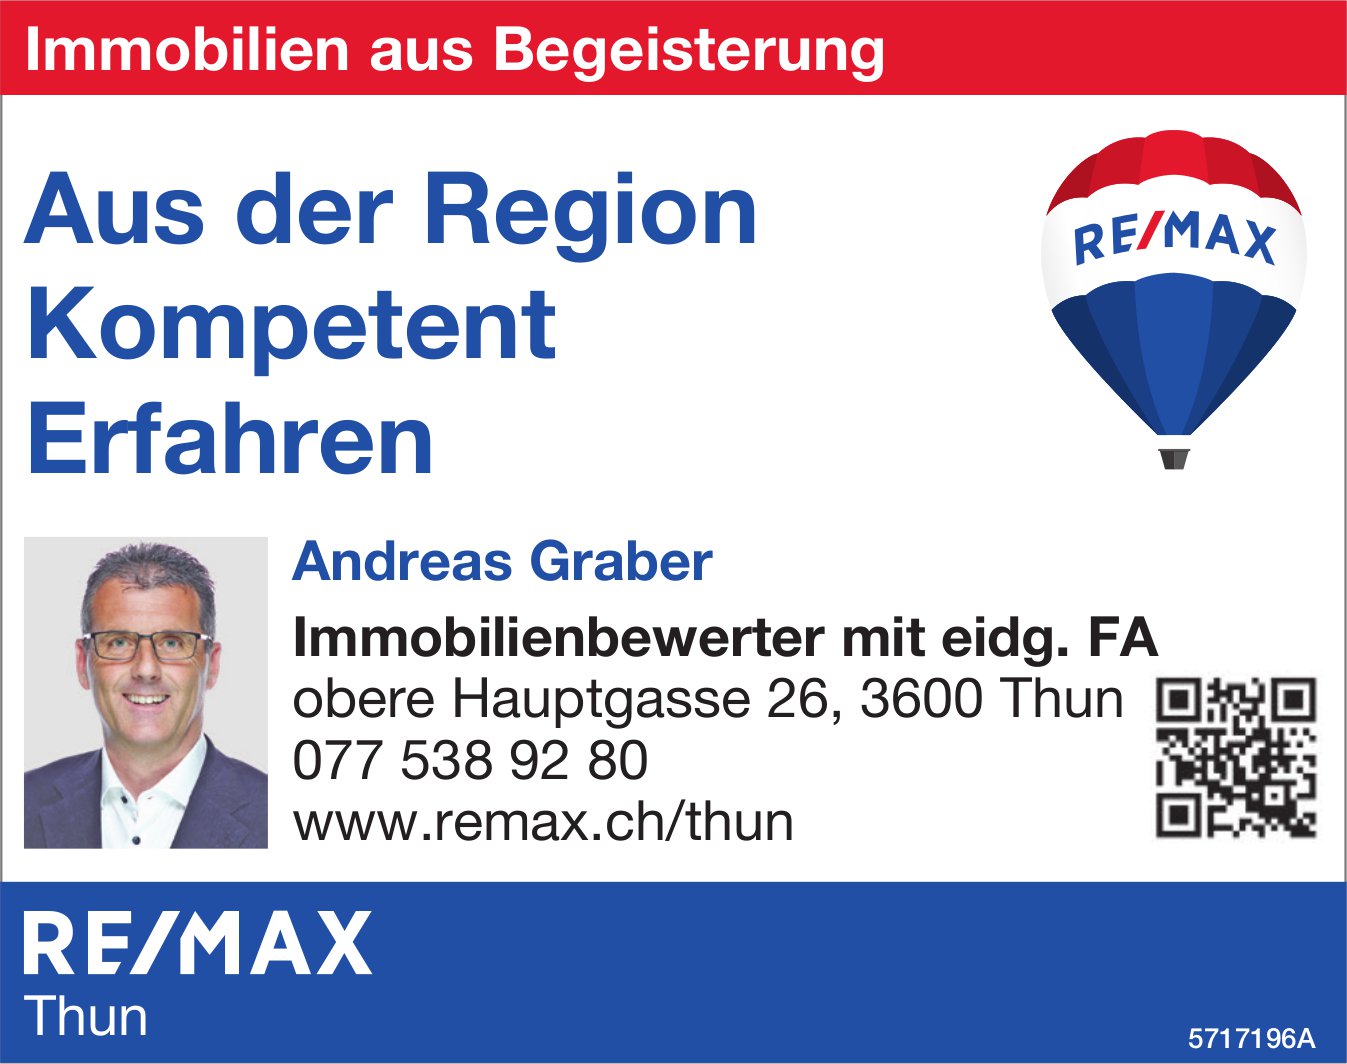 Remax Thun - Aus der Region Kompetent Erfahren